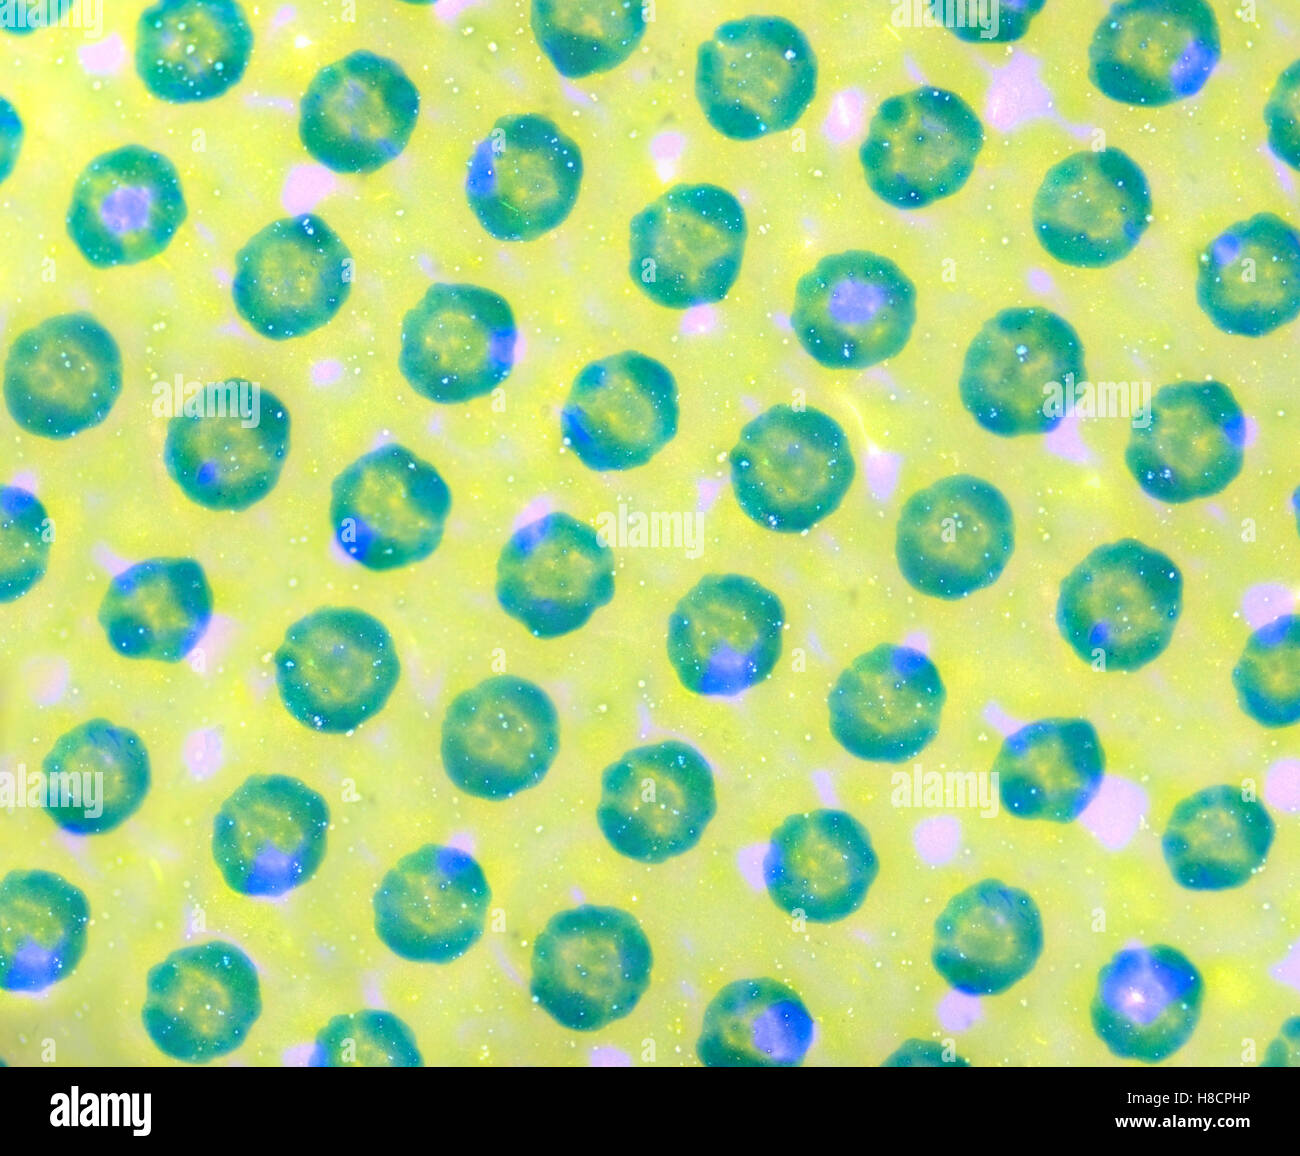 La microscopie image d'une feuille de couleur. Banque D'Images